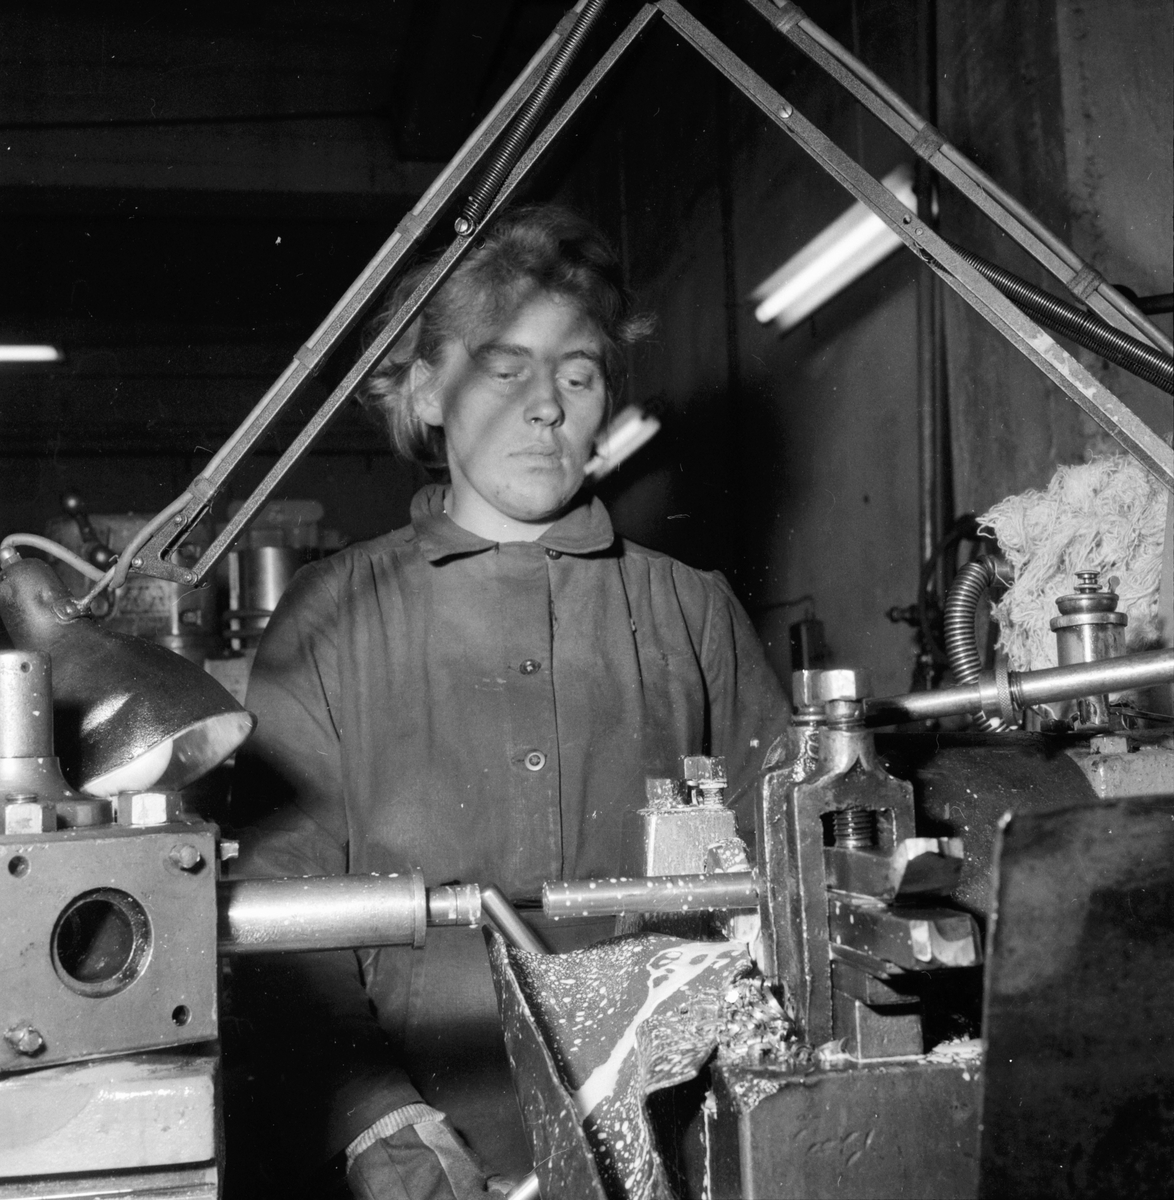 Lingbo verkstäder.
Eva Rasmusen svarvar kedjehylsor i en automatisk svarv som averkar hela stången i ett enda moment.
13/11 1958